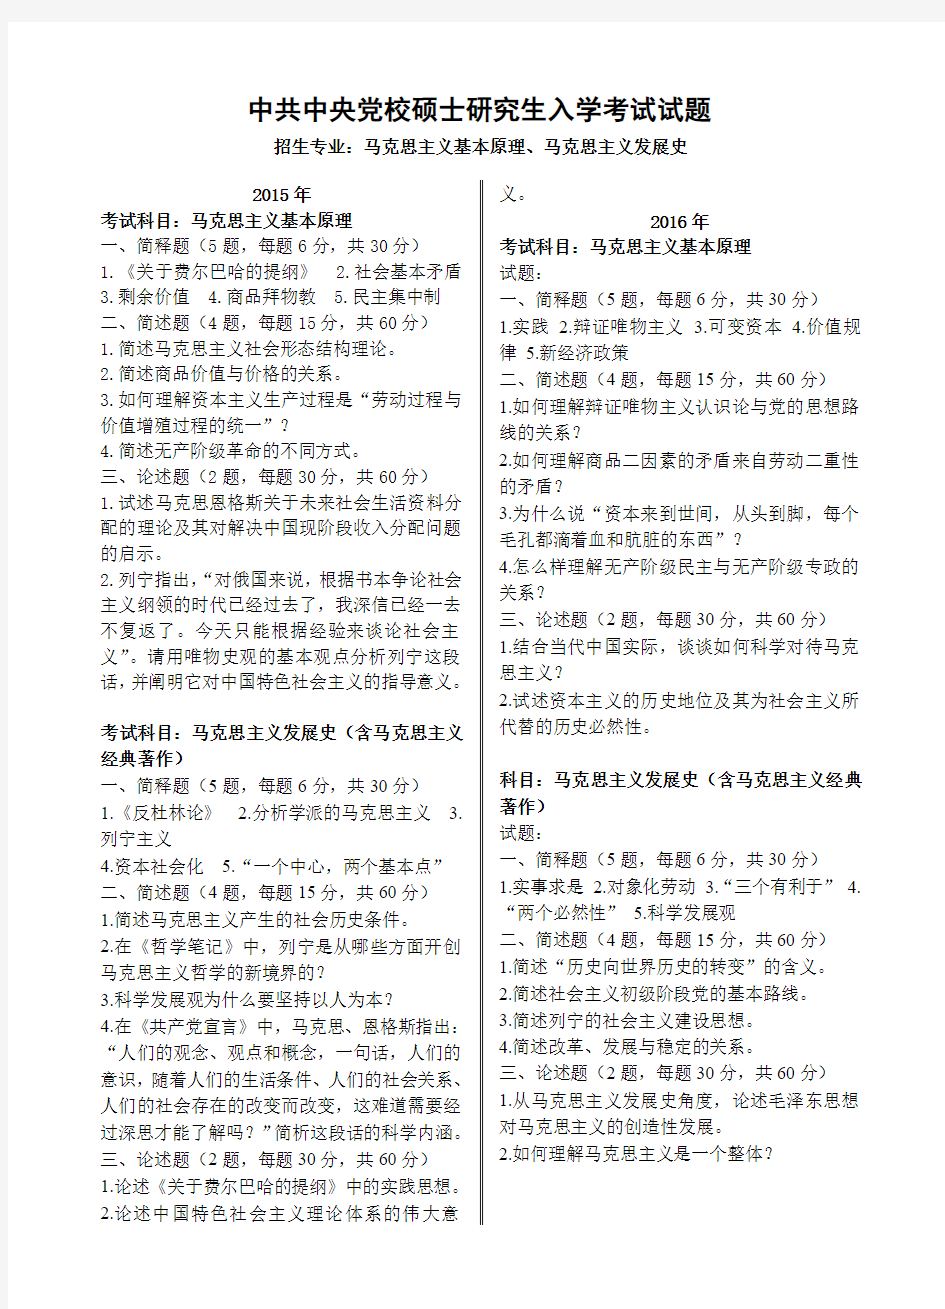 中共中央党校-硕士研究生入学考试试题-马克思主义基本原理、马克思主义发展史(2015年、2016年)